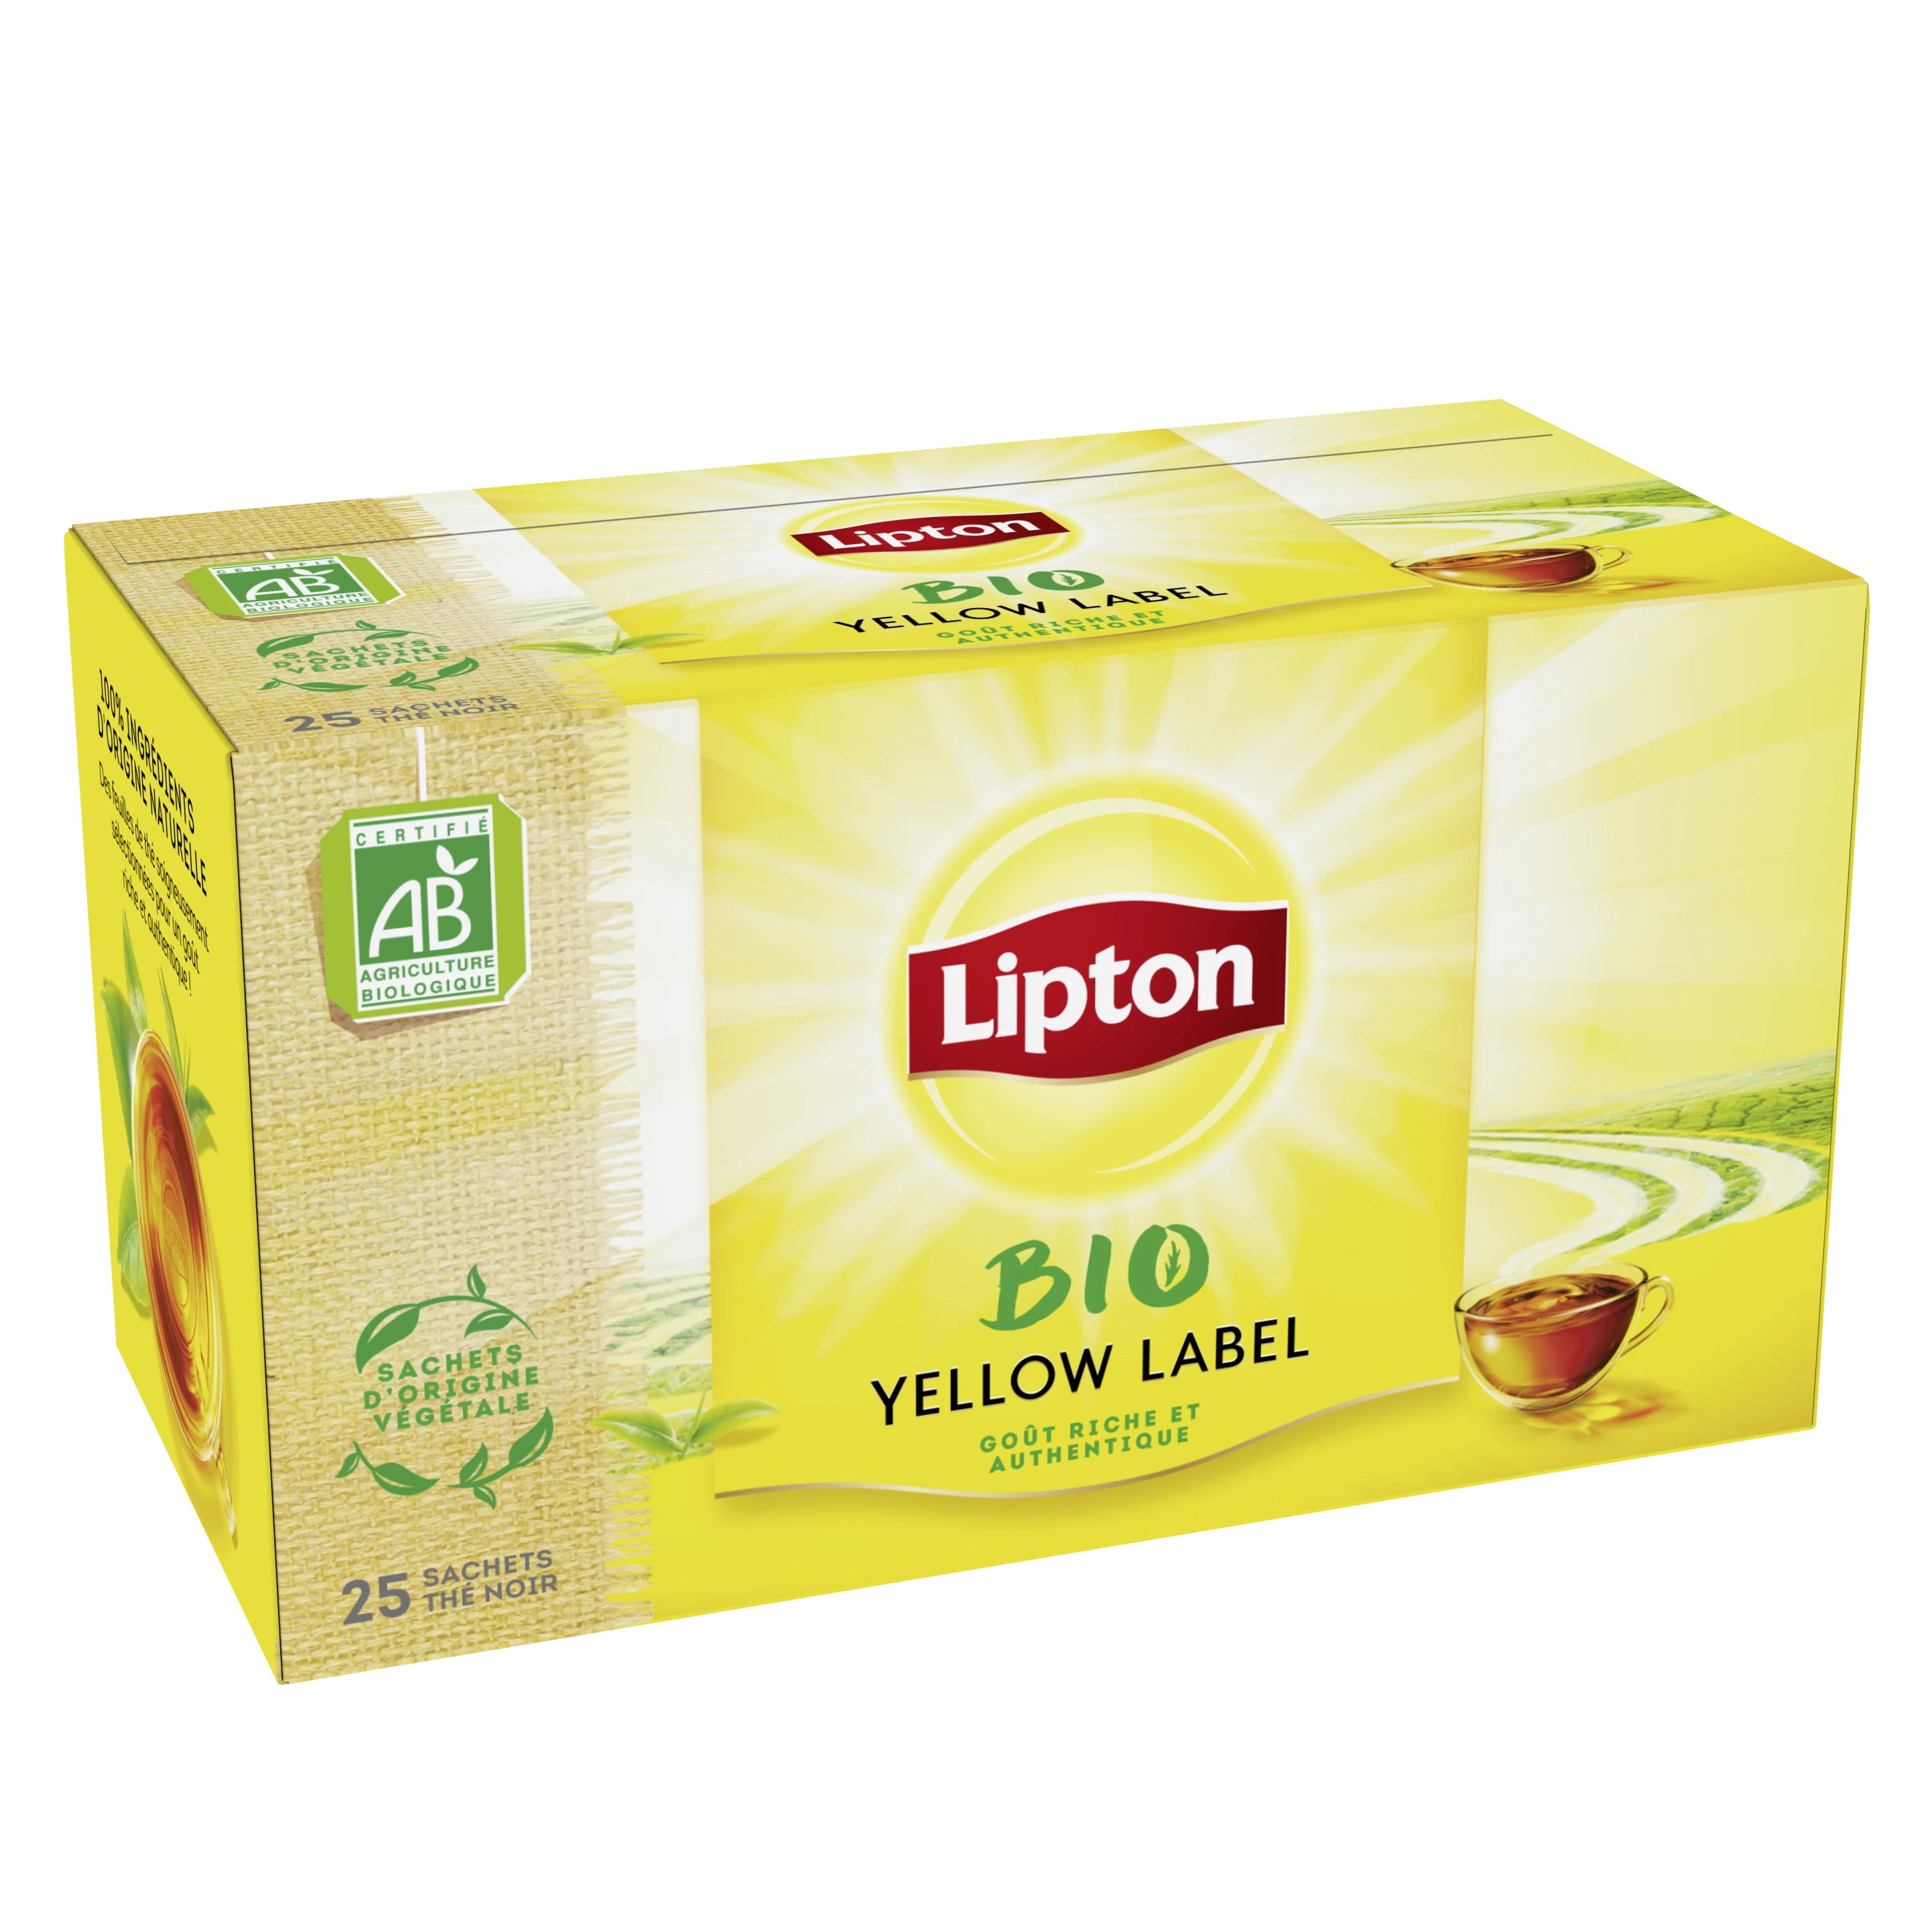 Thé Bio Yellow Label, 25 шт., 50 г - LIPTON